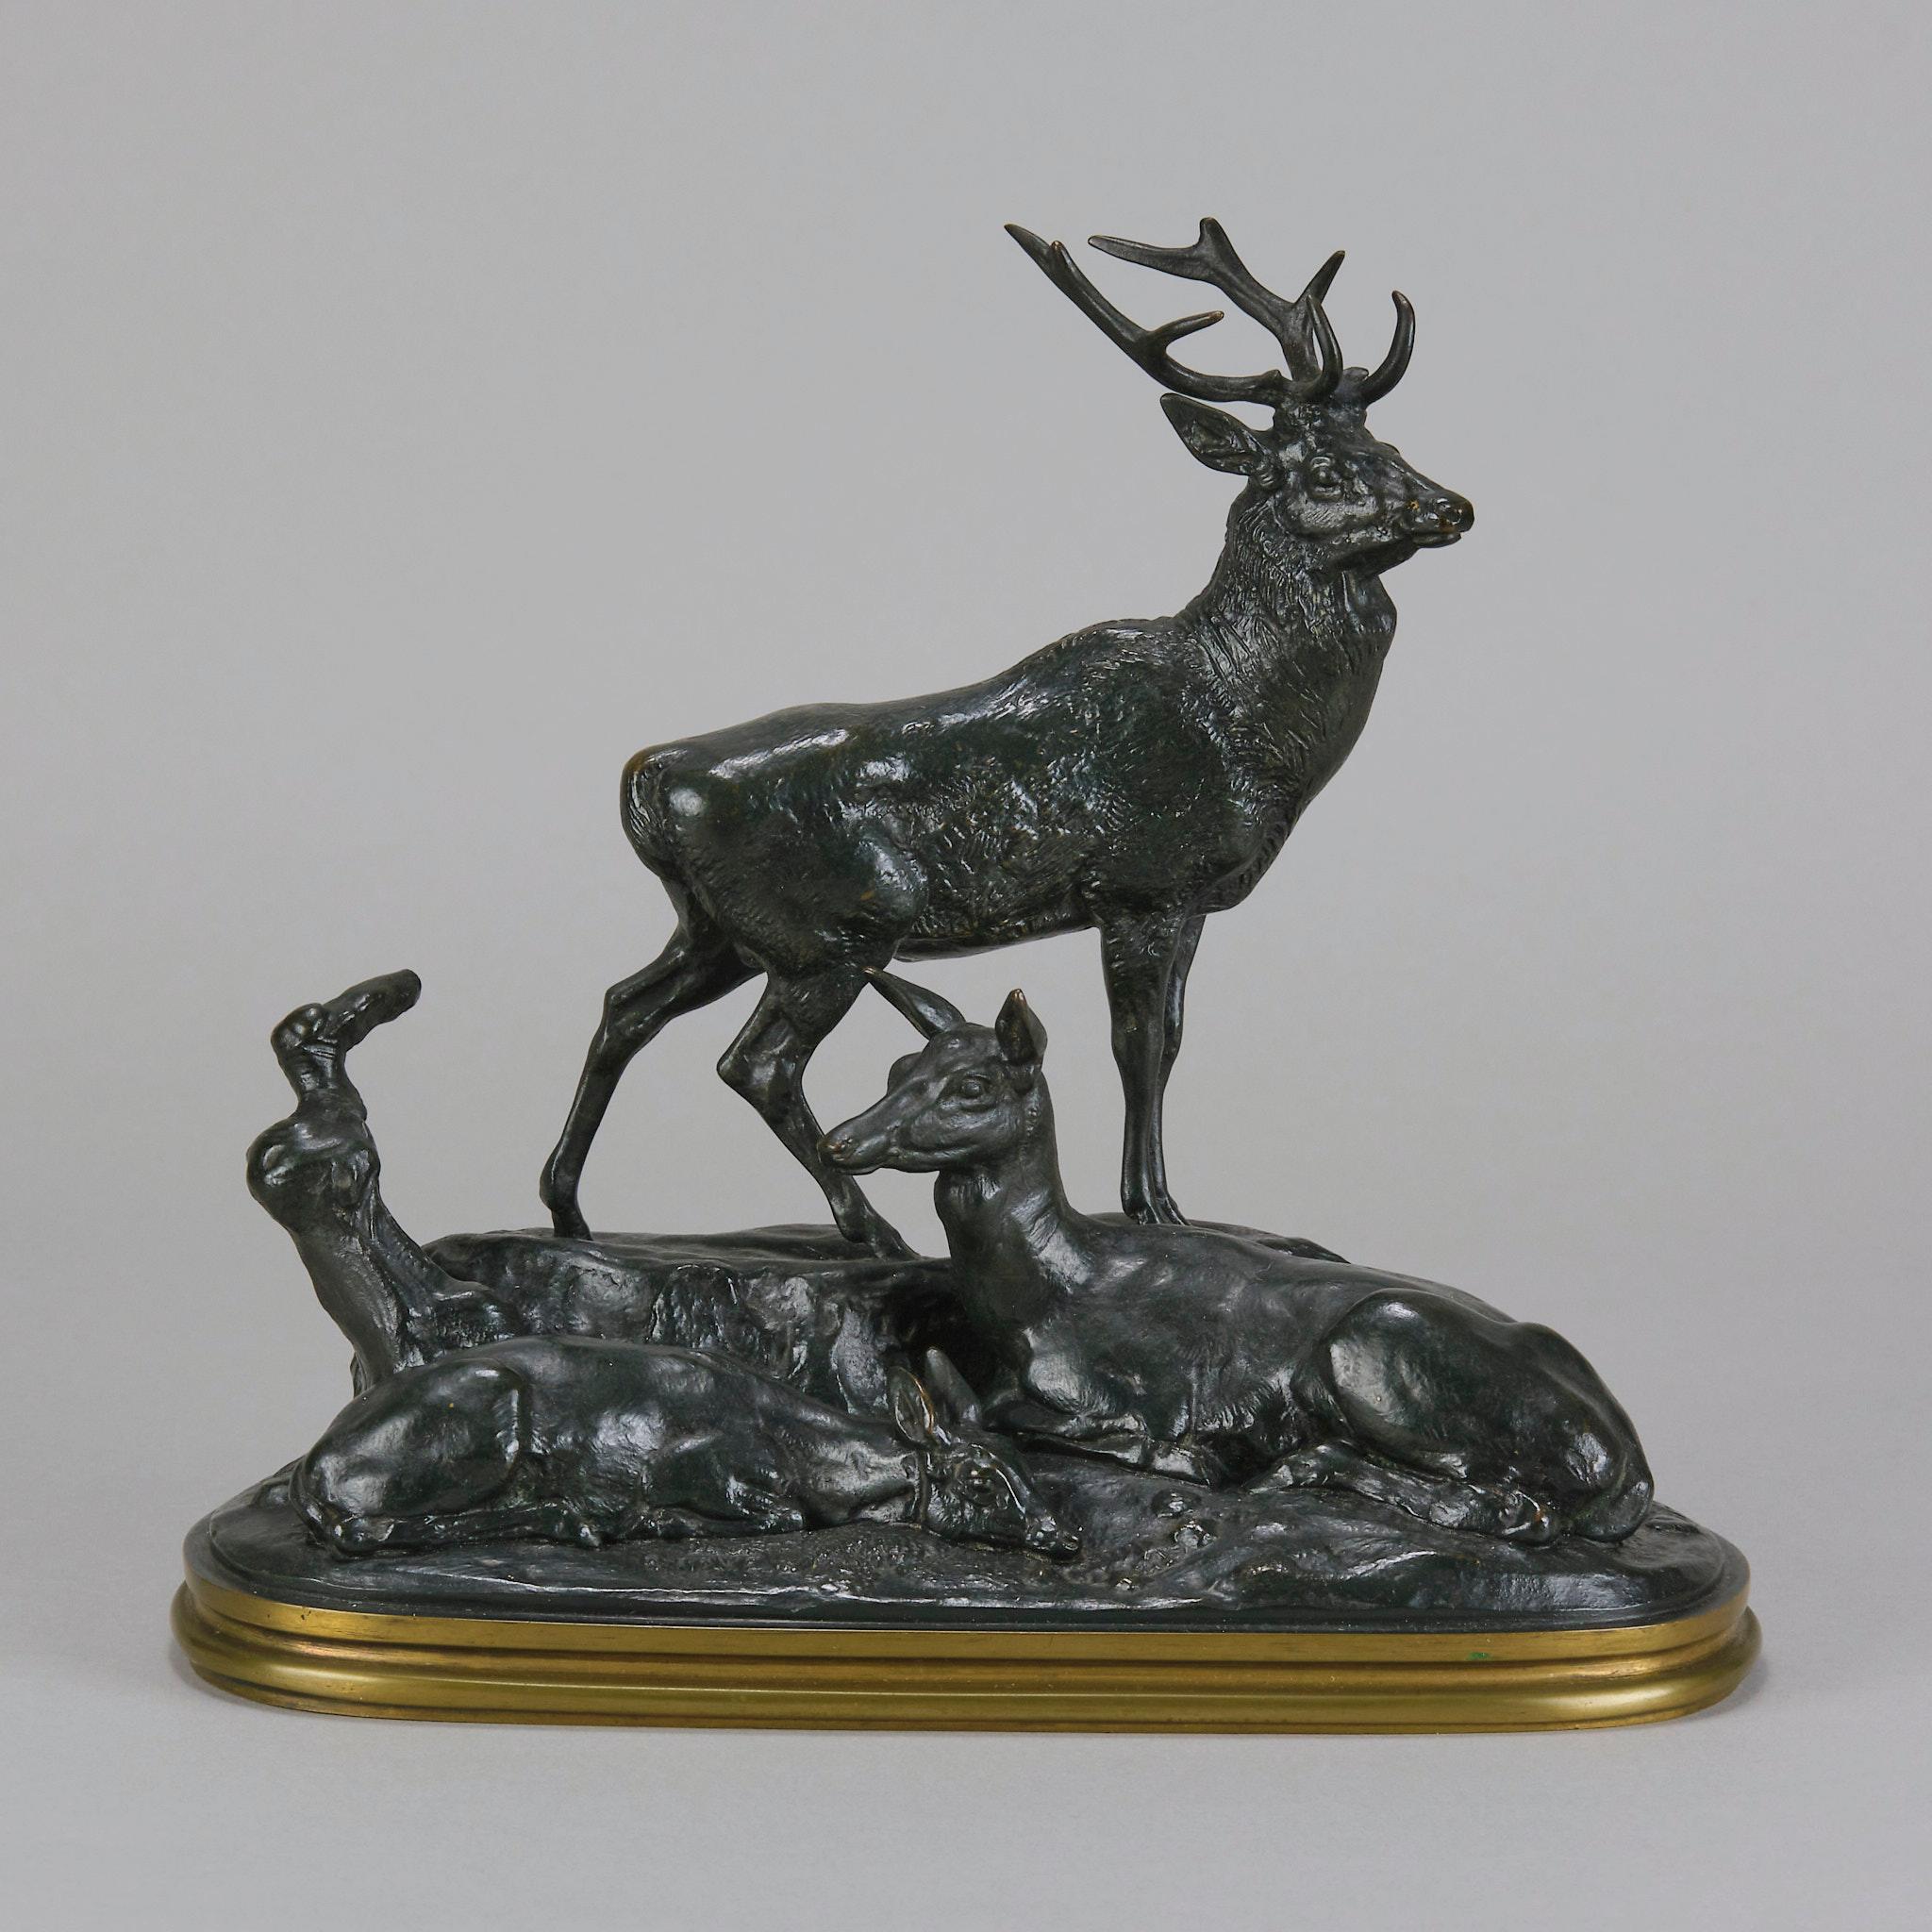 Ravissant groupe en bronze animalier de la fin du XIXe siècle représentant une famille de cerfs au repos, comprenant un cerf alerte, une biche et un faune au repos. Le sujet a modelé avec une intuition et une habileté merveilleuses. La surface